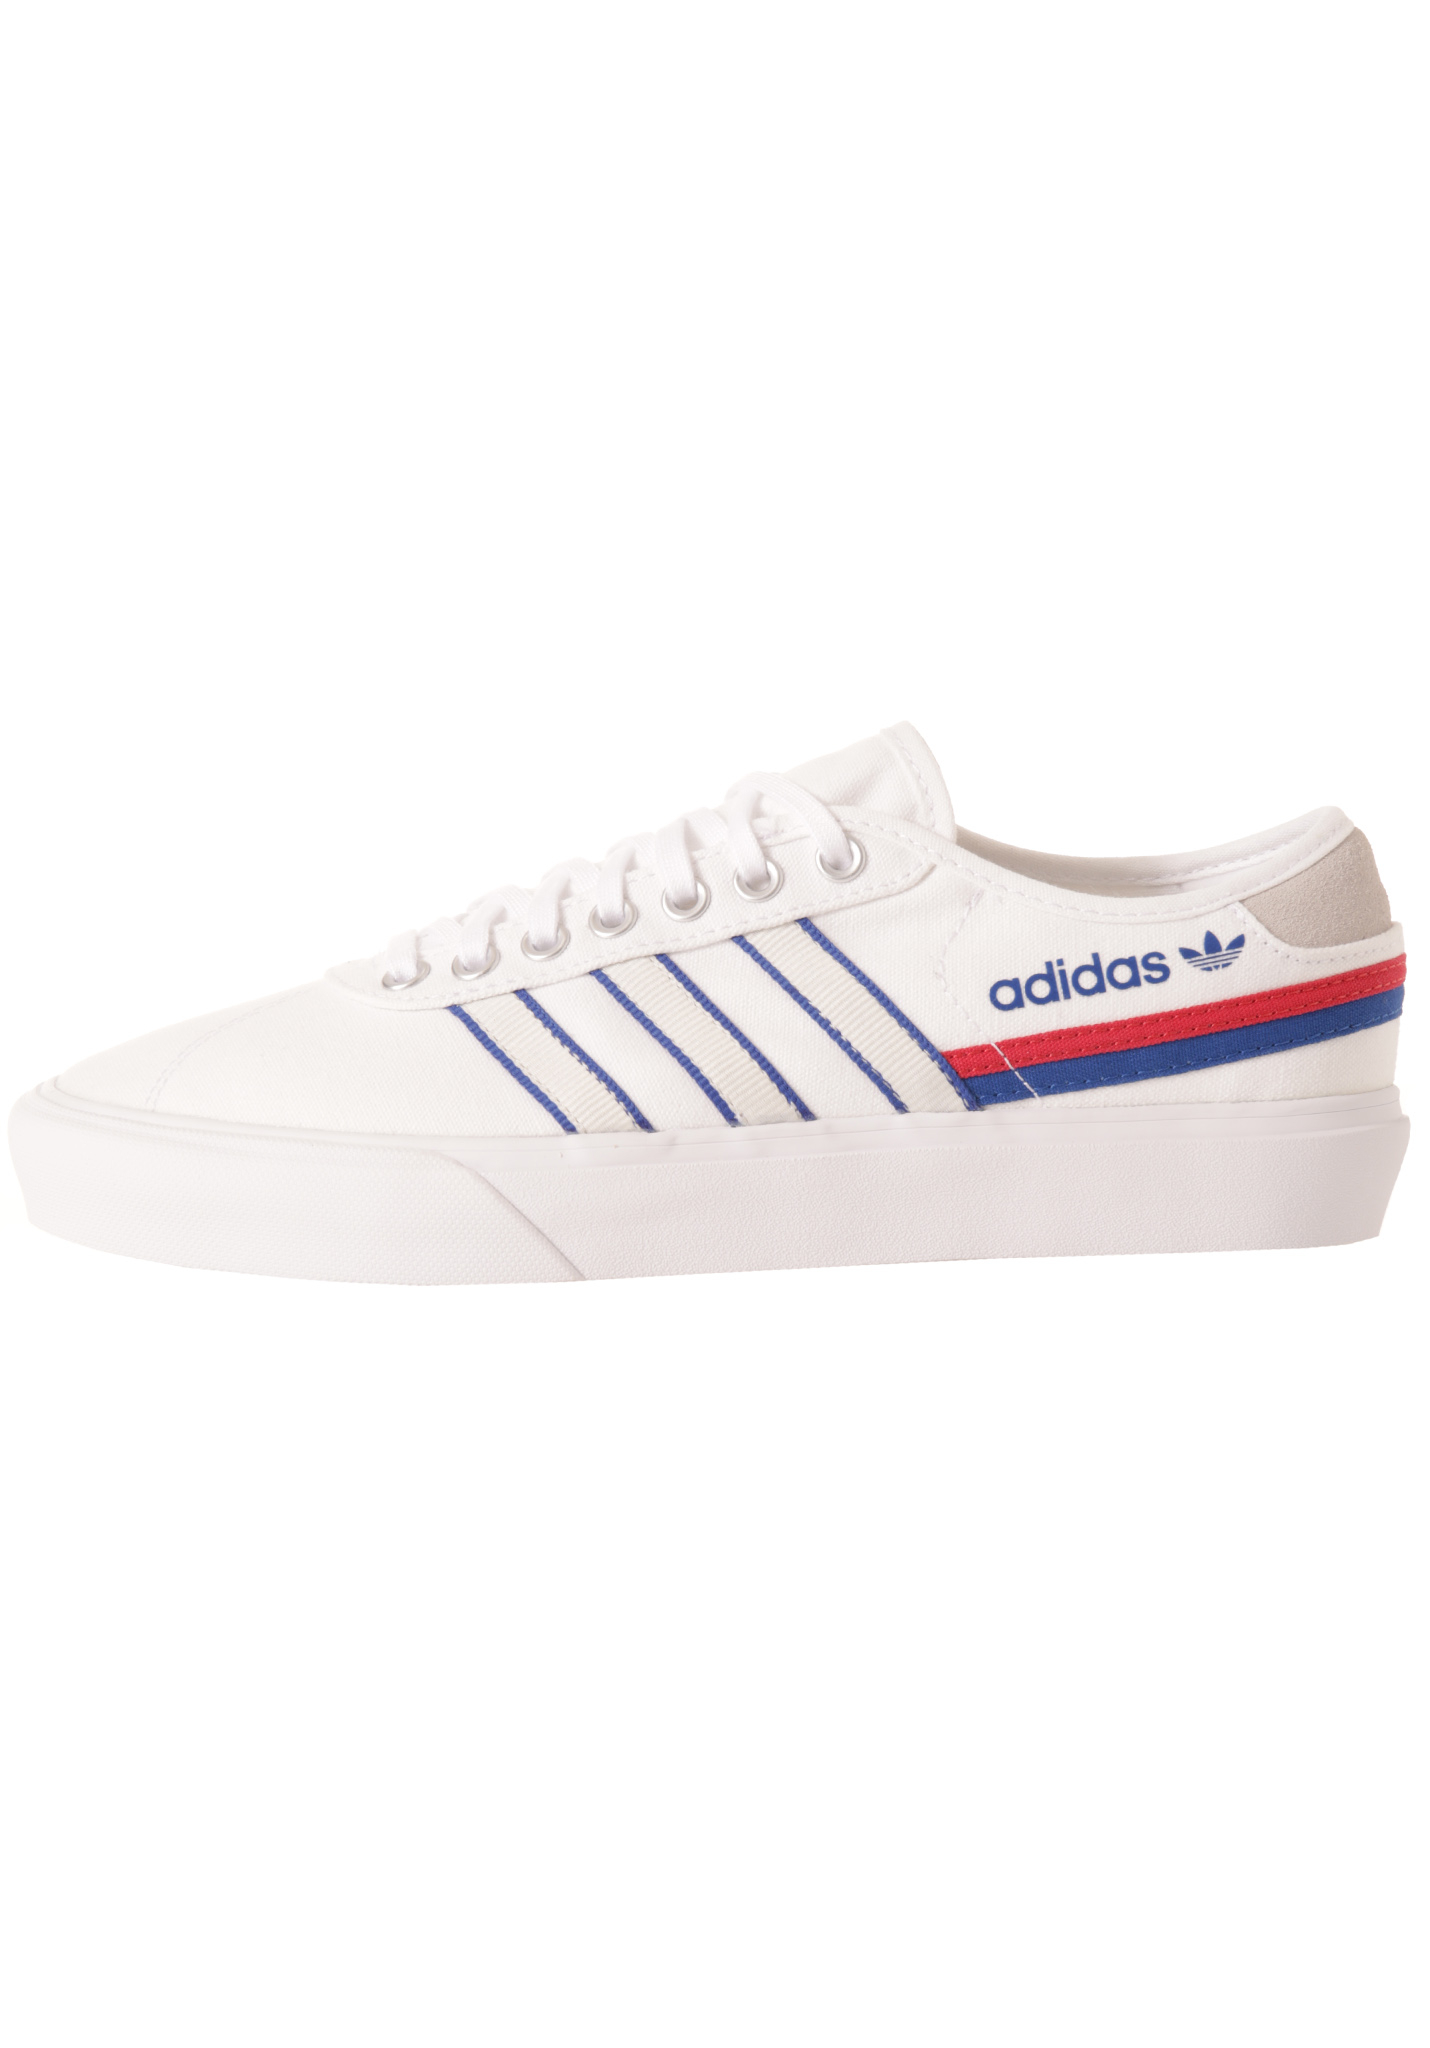 Adidas Originals Delpala Sneaker schuhe weiß/scharlachrot/königsblau 45